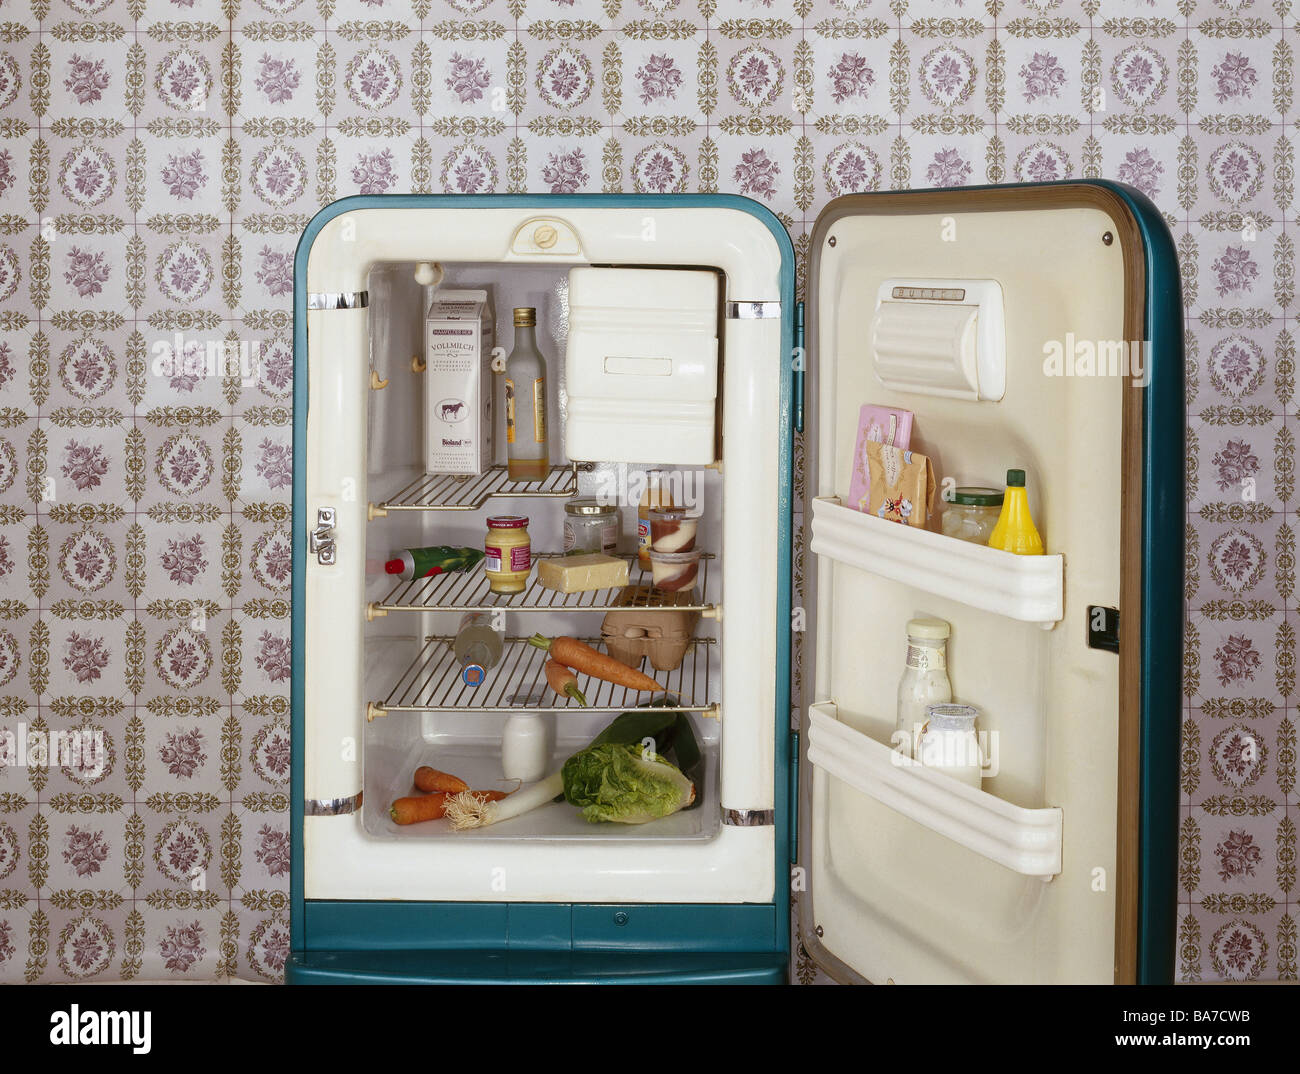 Kühlschrank offen antiquiert Food Beverage Tapete Retro Küche Gerät des  Haushalts Tapetenmuster Retrolook Stockfotografie - Alamy